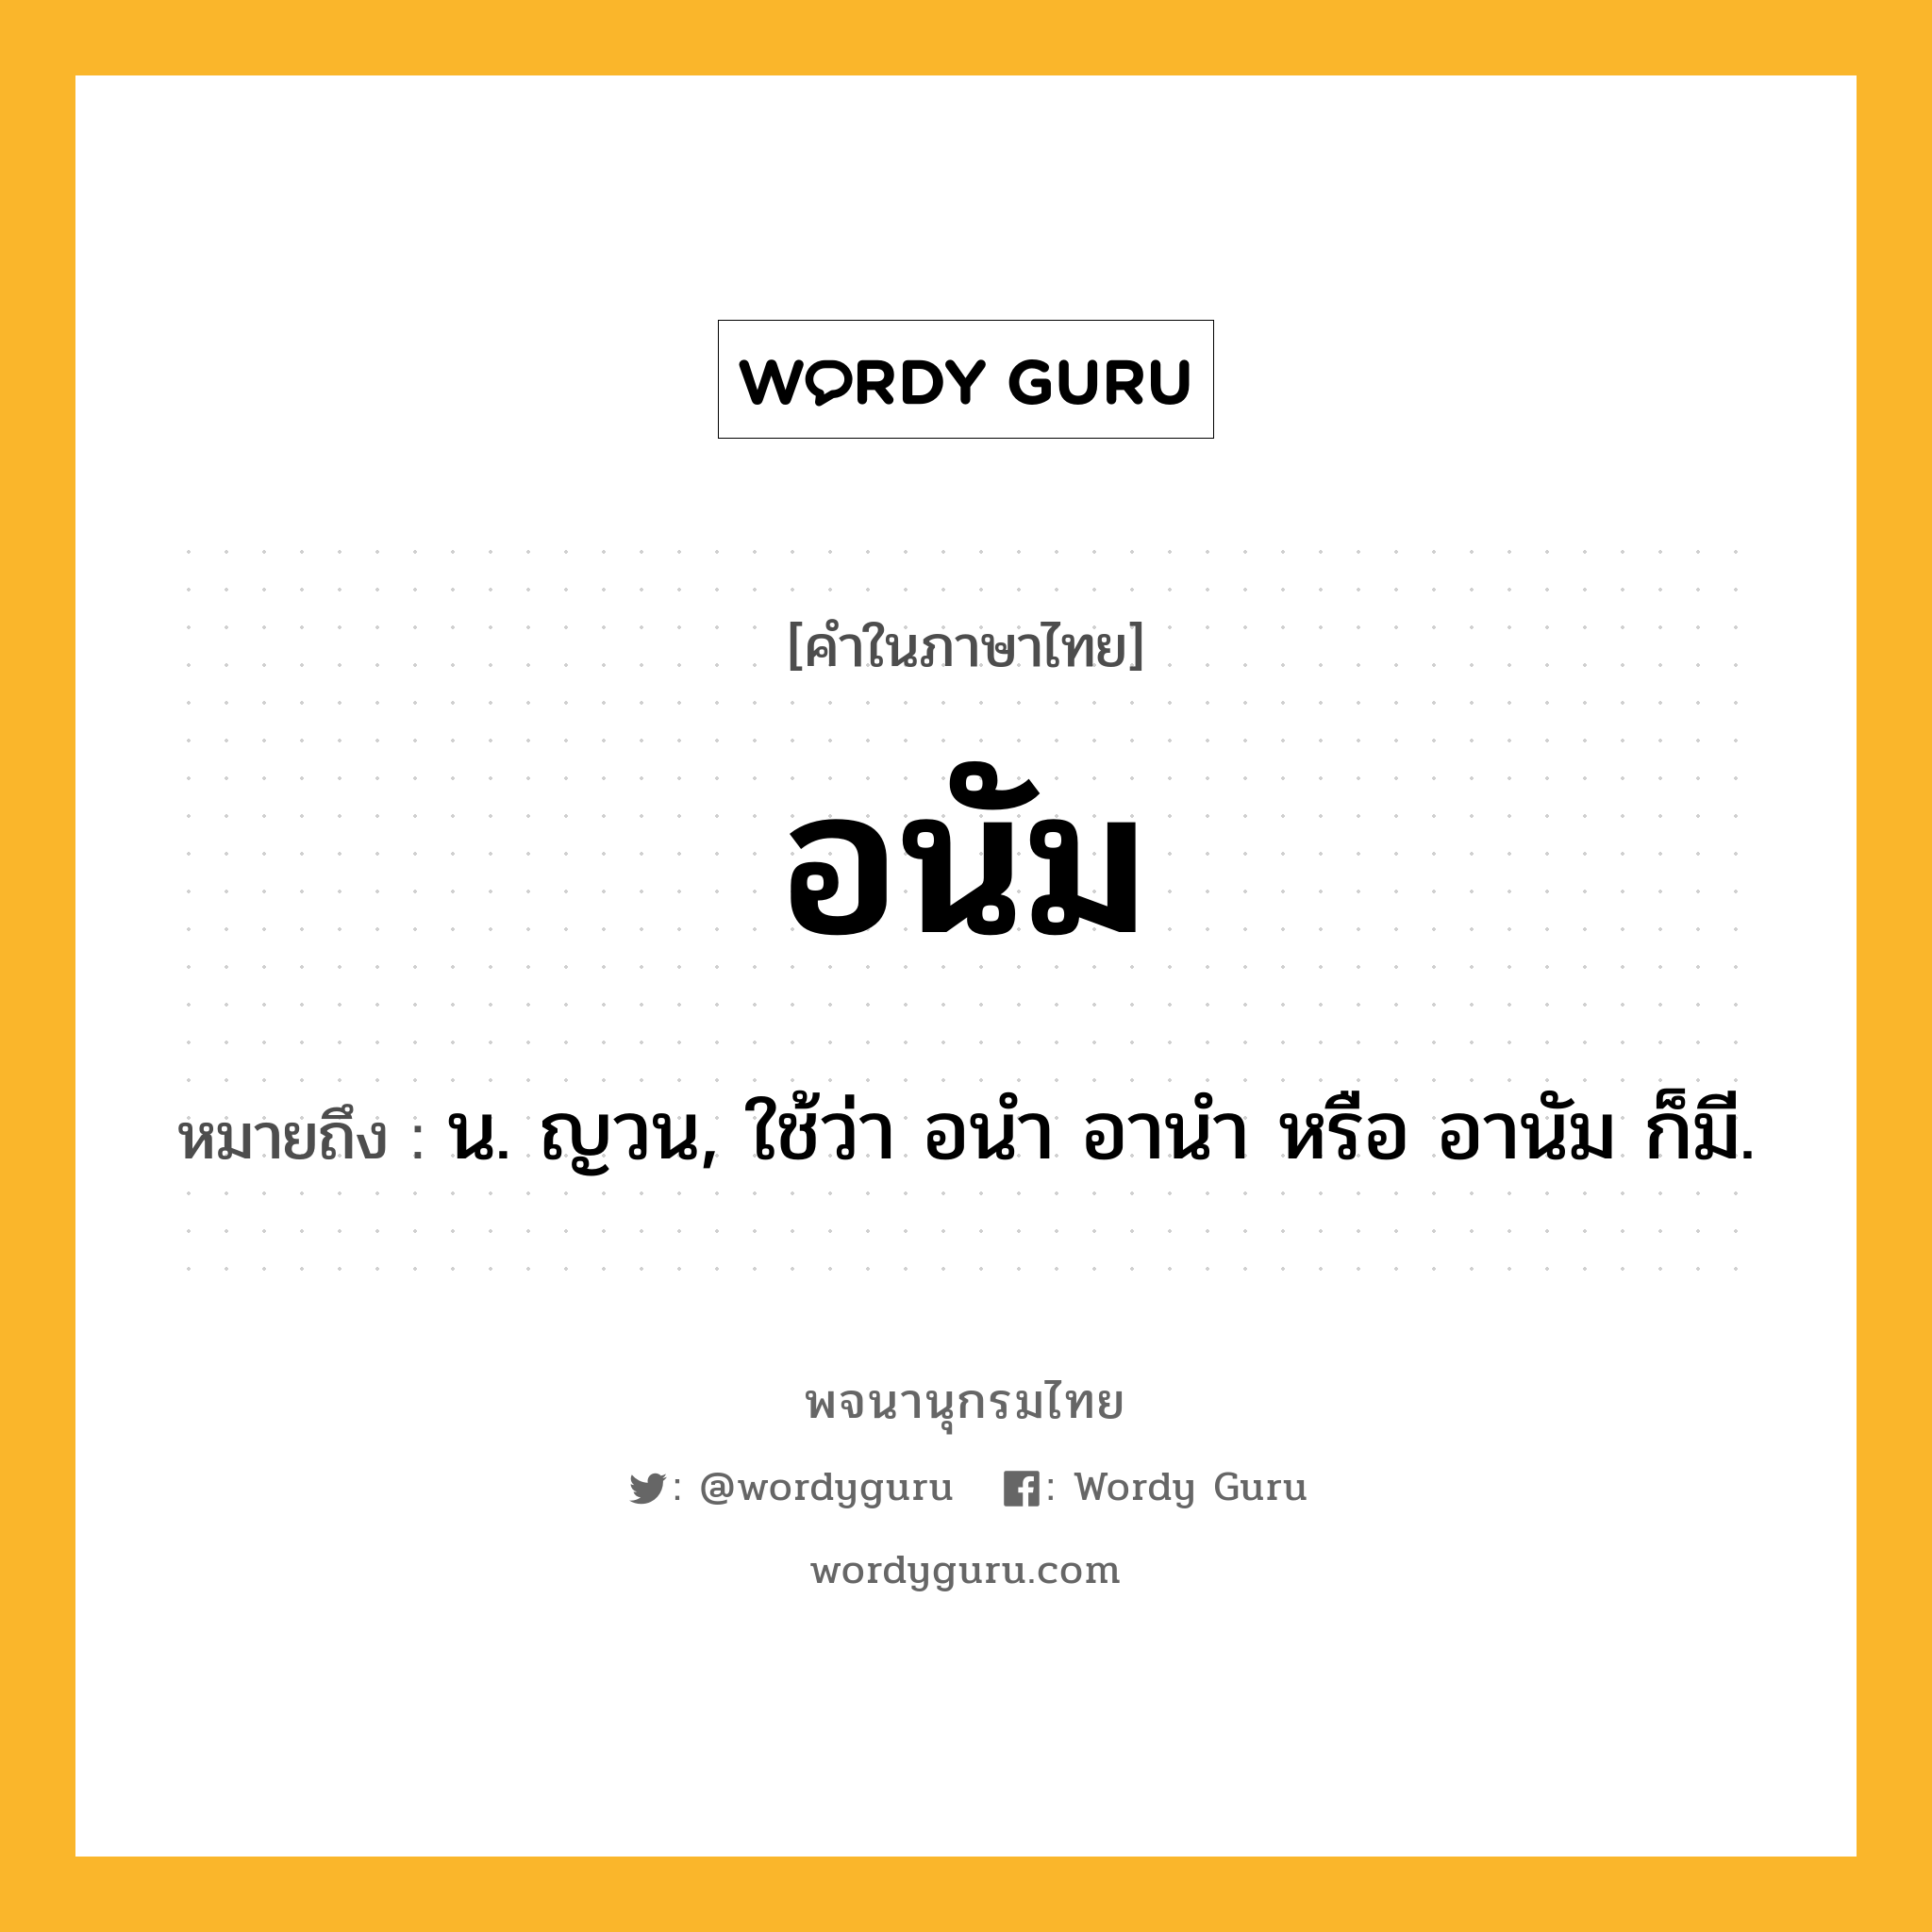 อนัม ความหมาย หมายถึงอะไร?, คำในภาษาไทย อนัม หมายถึง น. ญวน, ใช้ว่า อนํา อานํา หรือ อานัม ก็มี.